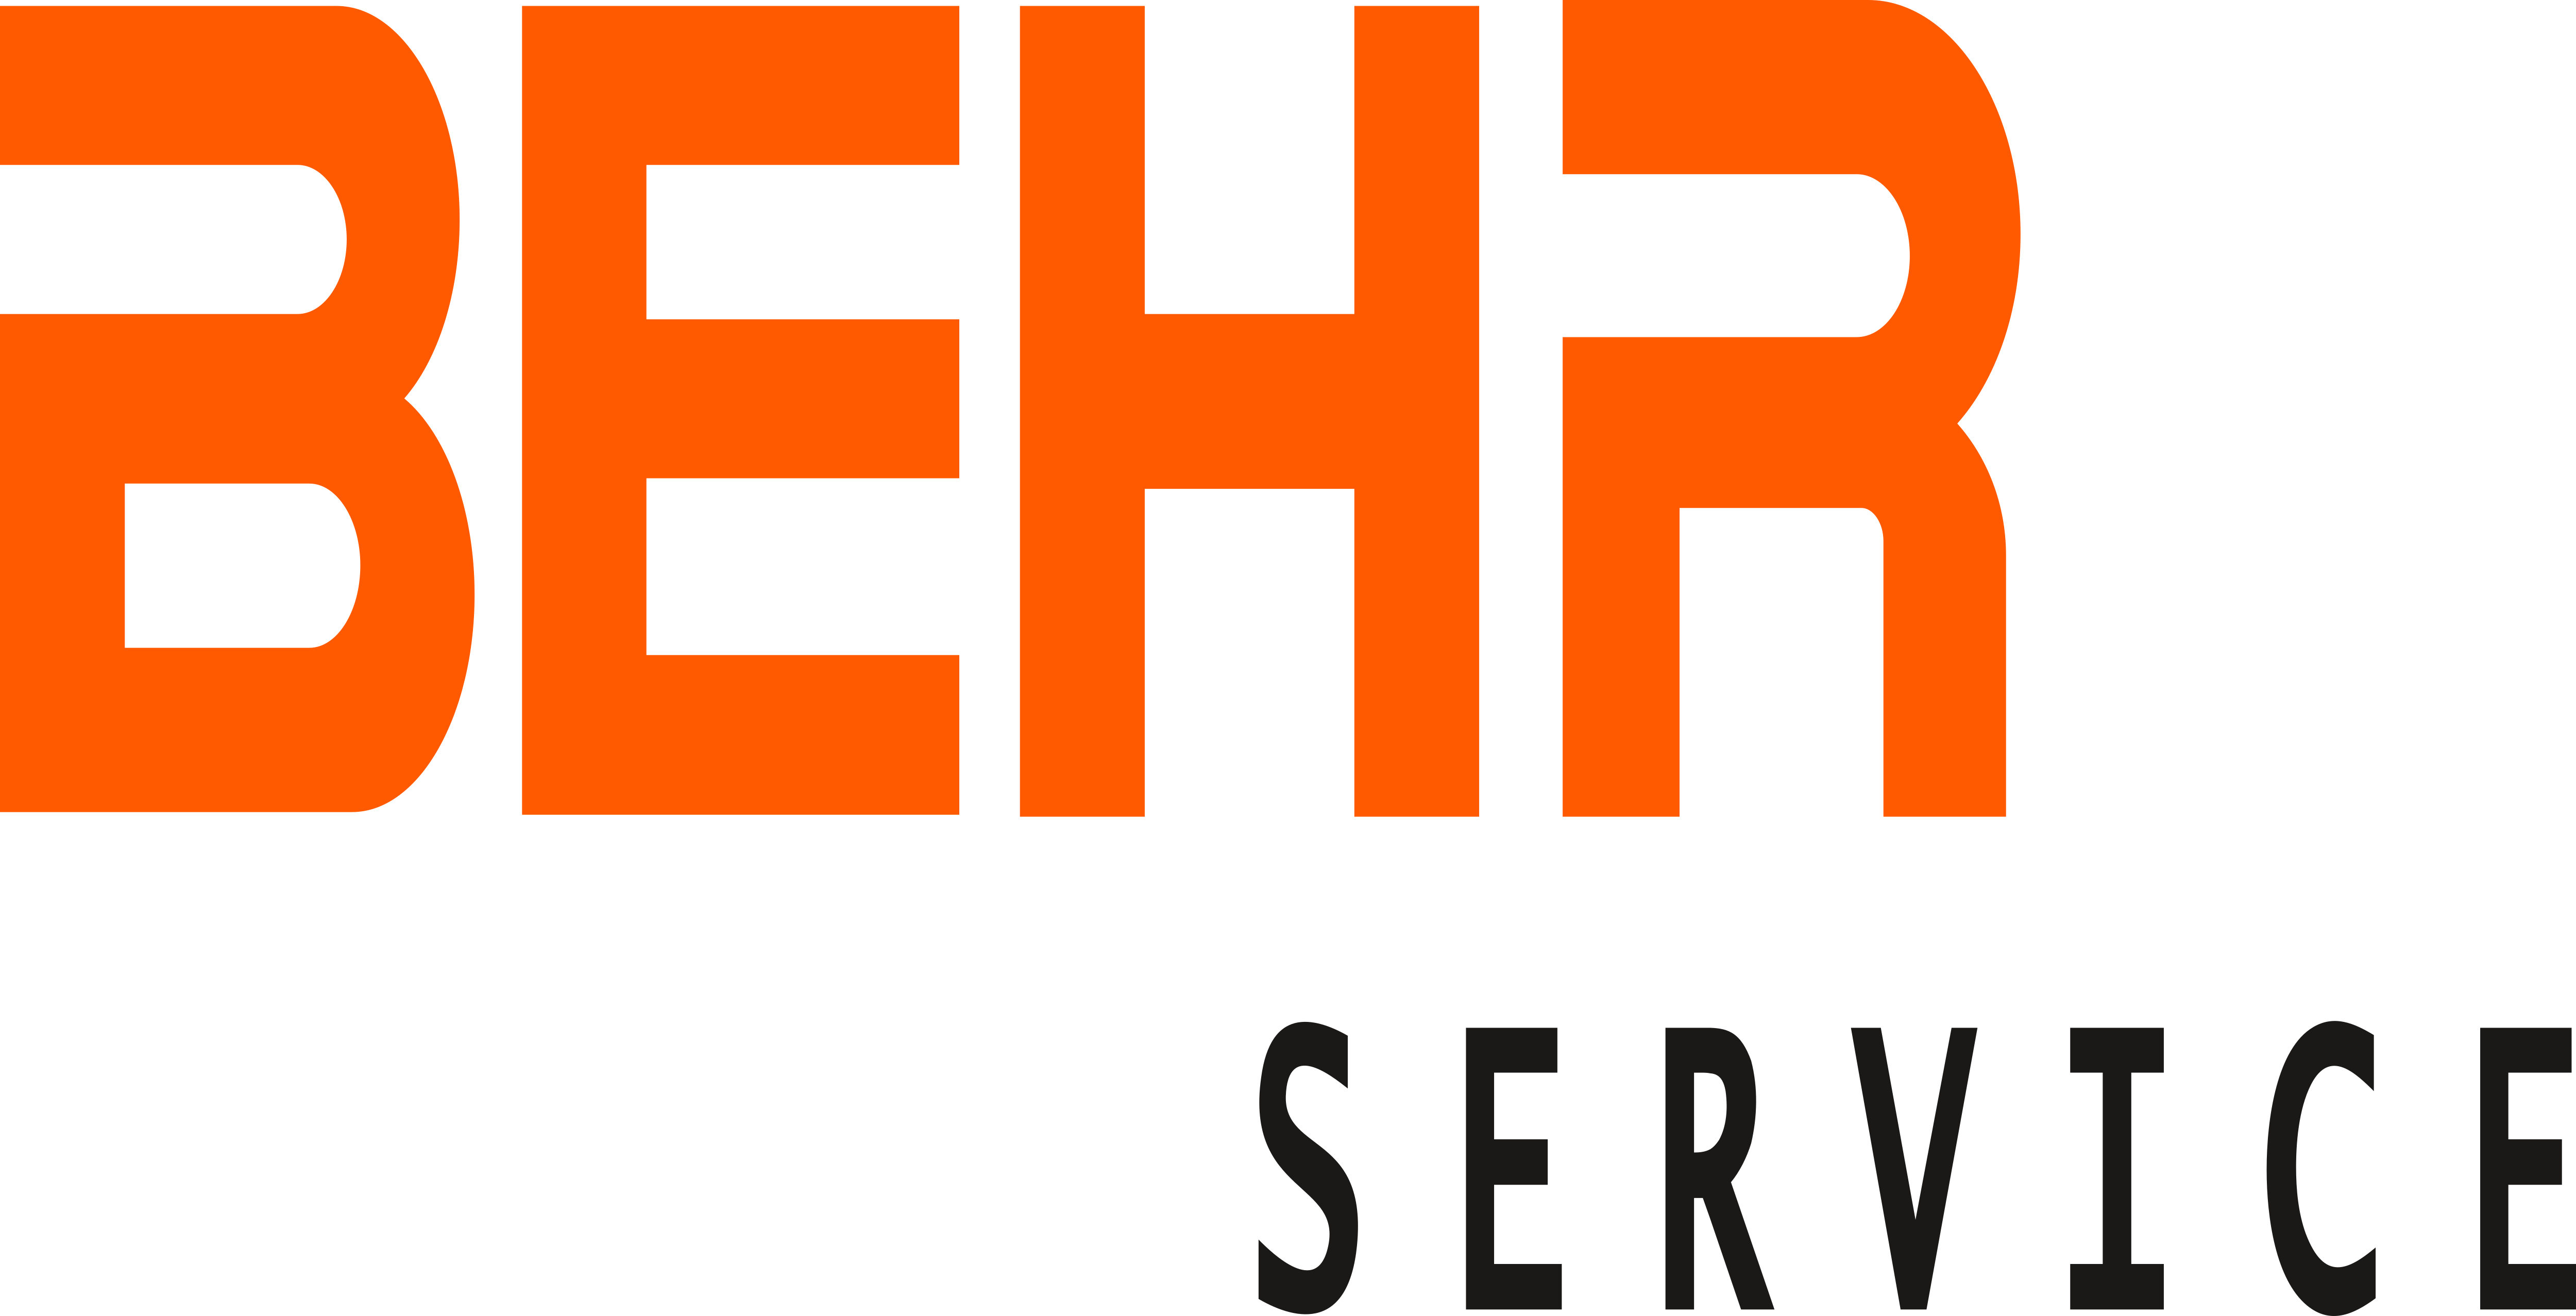 Behr Logo - Behr Service